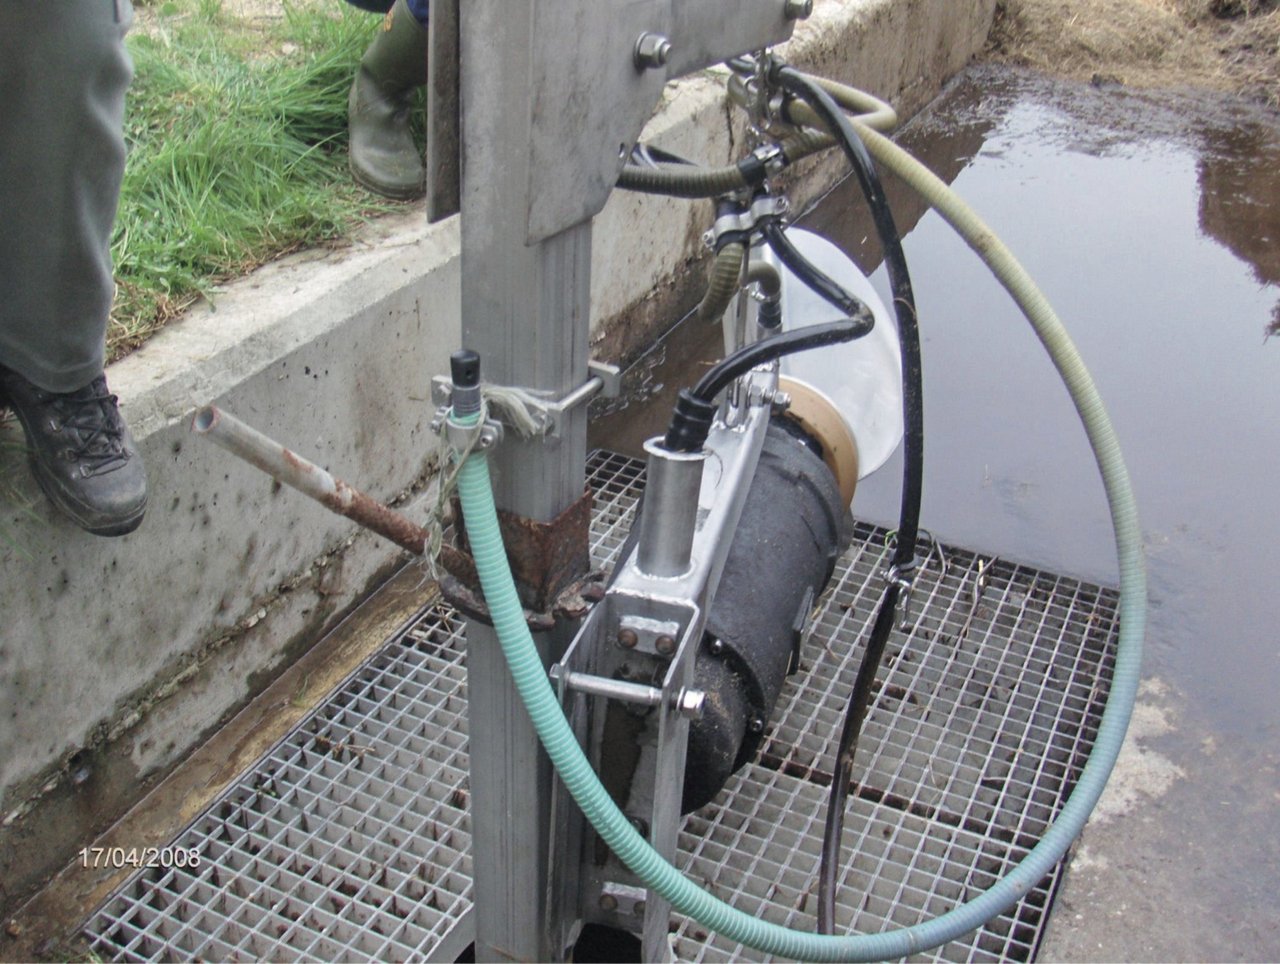 Die Firma Arnold Biogas und Verfahrenstechnik fertigte dieses Rührwerk zum Belüften und Rühren der Gülle an. Das Objekt wird auch serienmässig hergestellt. (Bild Samuel Otti)